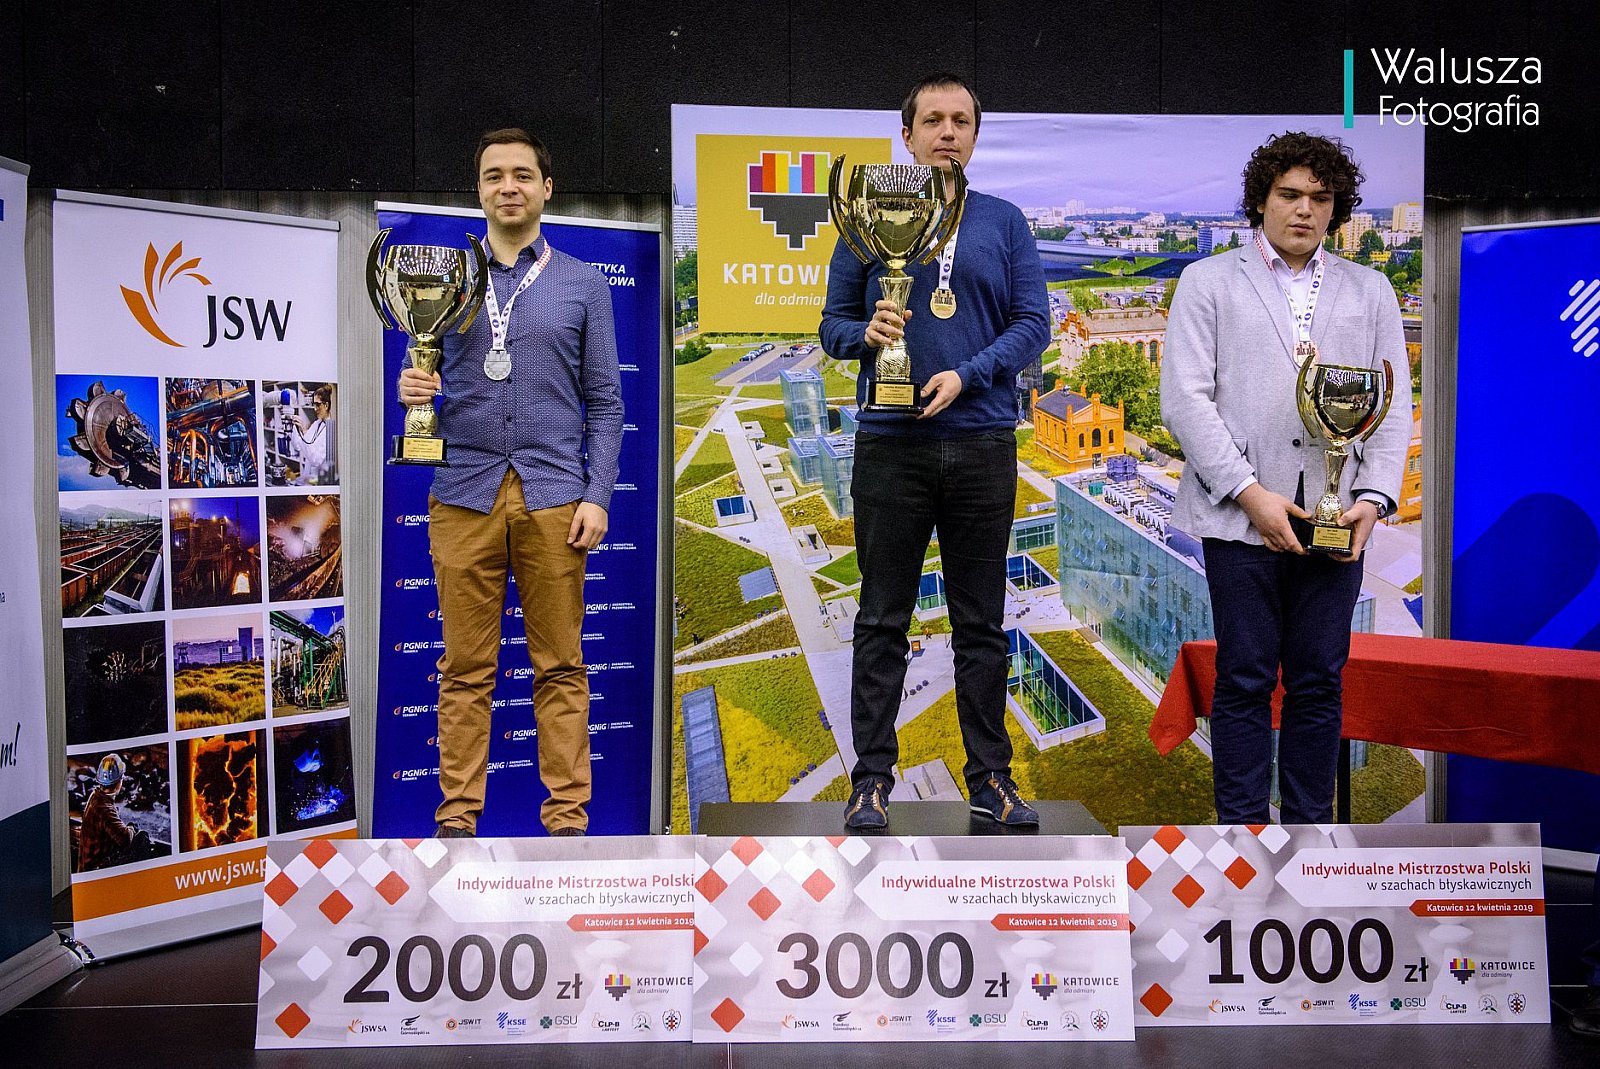 winners podium